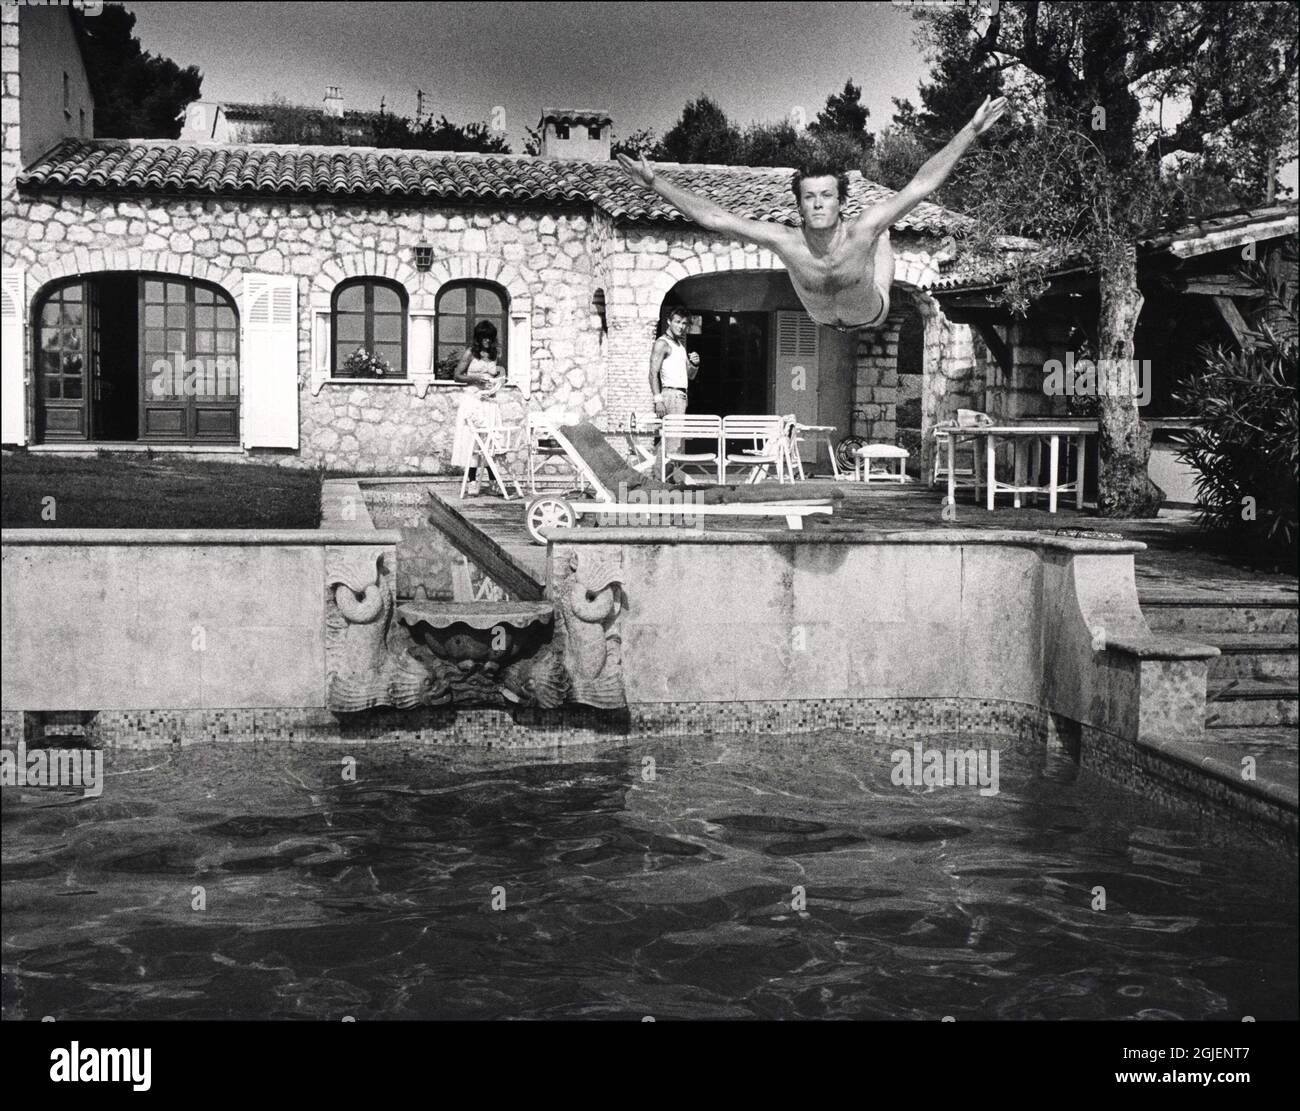 Magne Furuholmen taucht in den Pool in Vence, Südfrankreich. Stockfoto